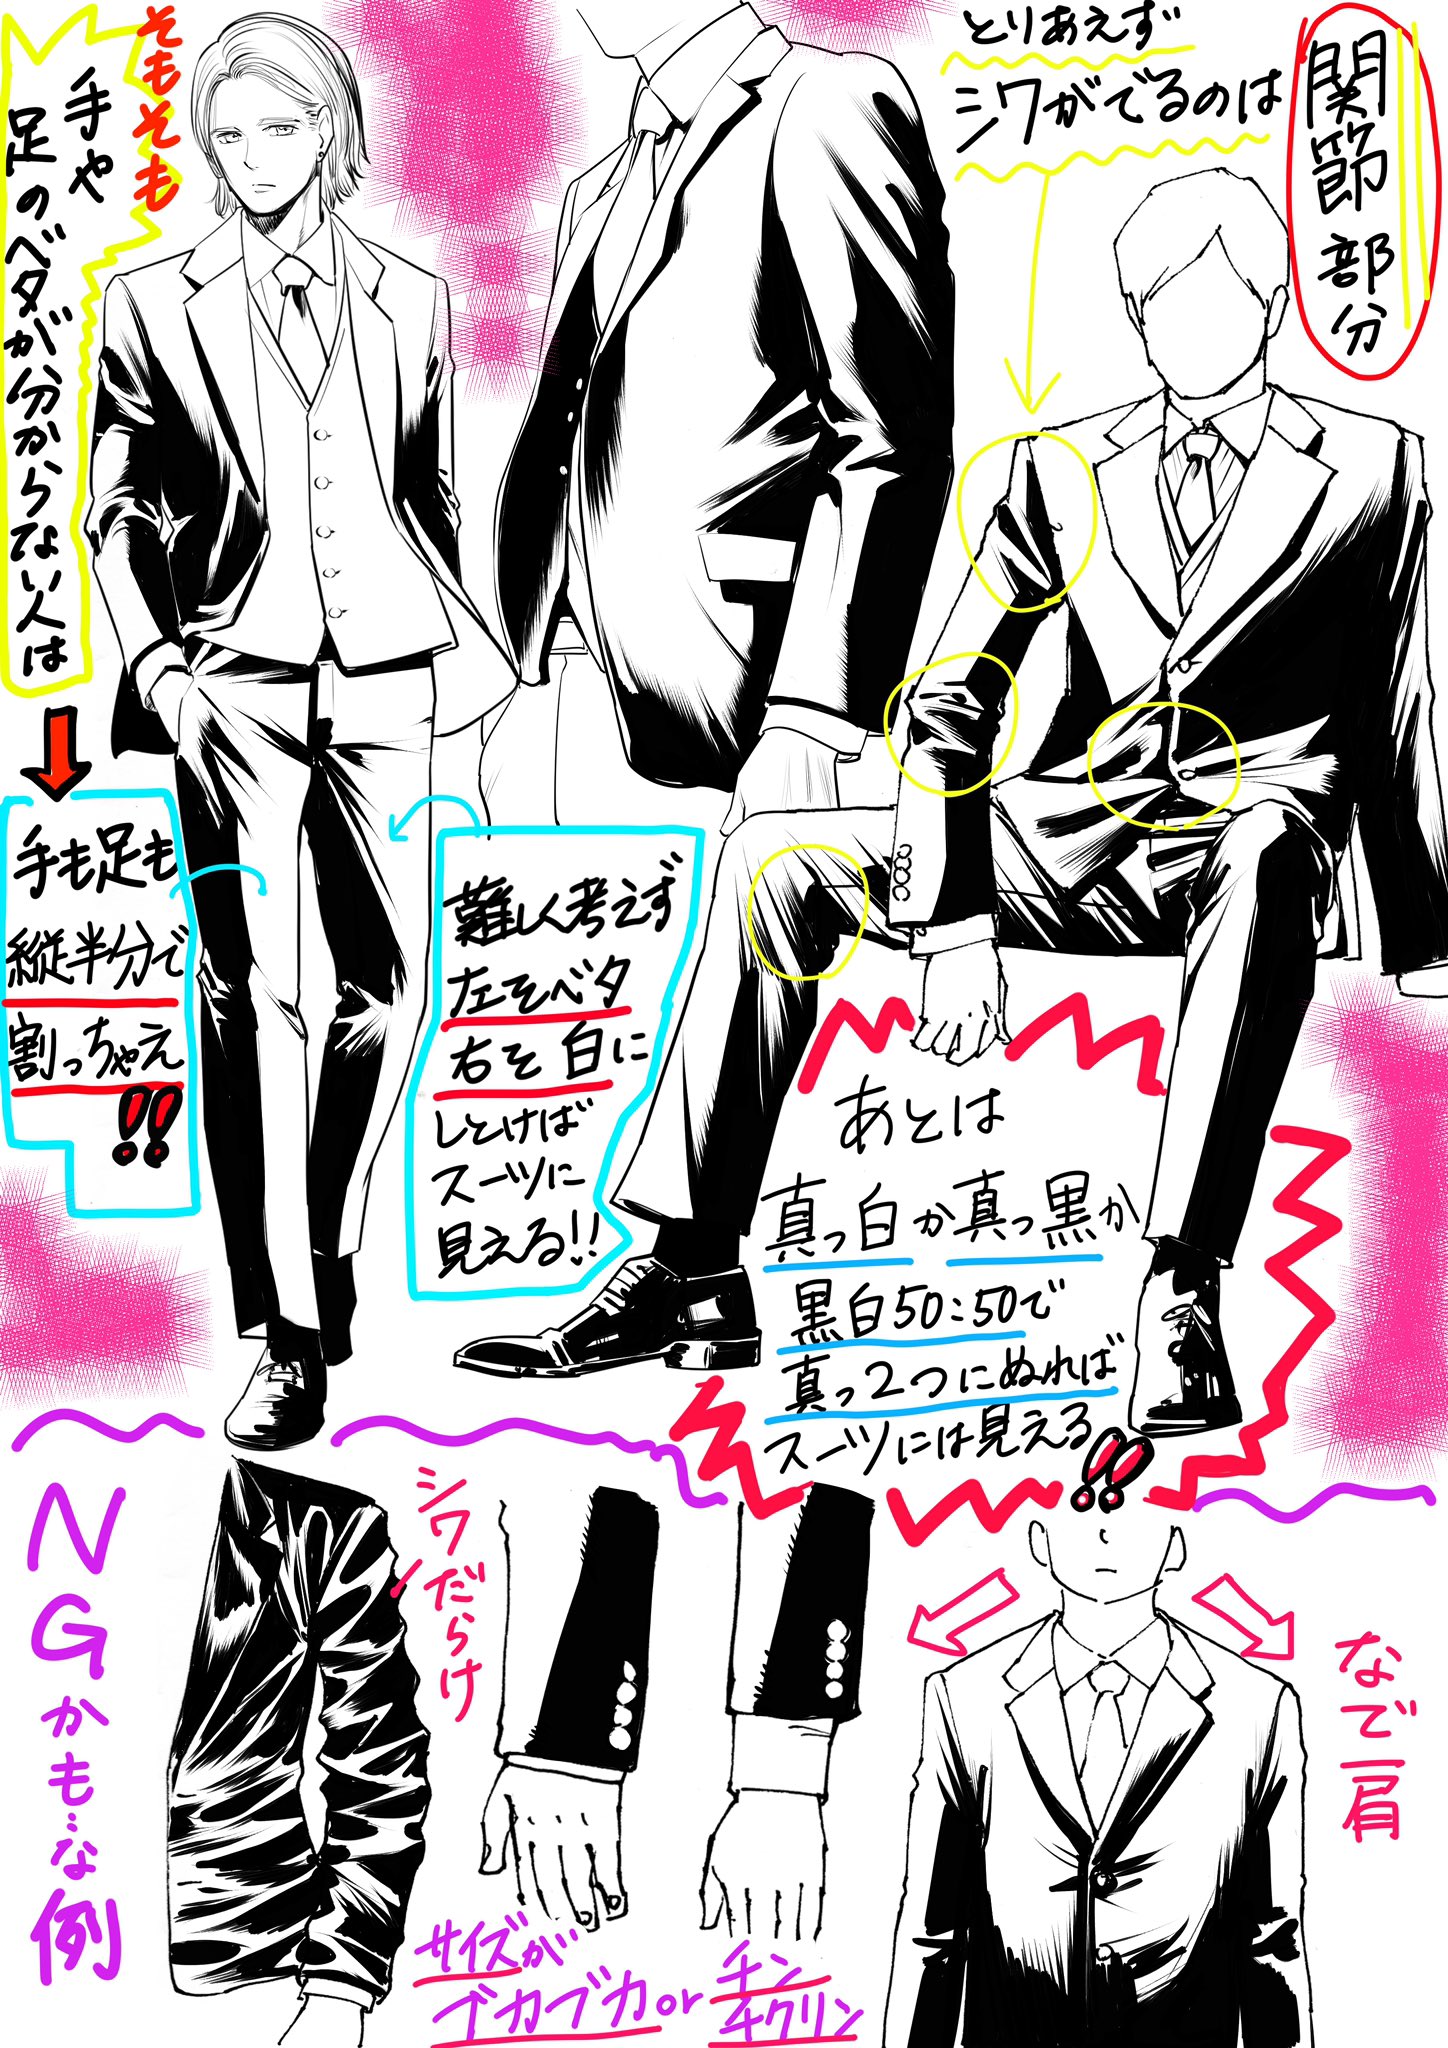 吉村拓也 イラスト講座 スーツの黒ツヤが描けないときのコツ T Co Axey98zogu Twitter